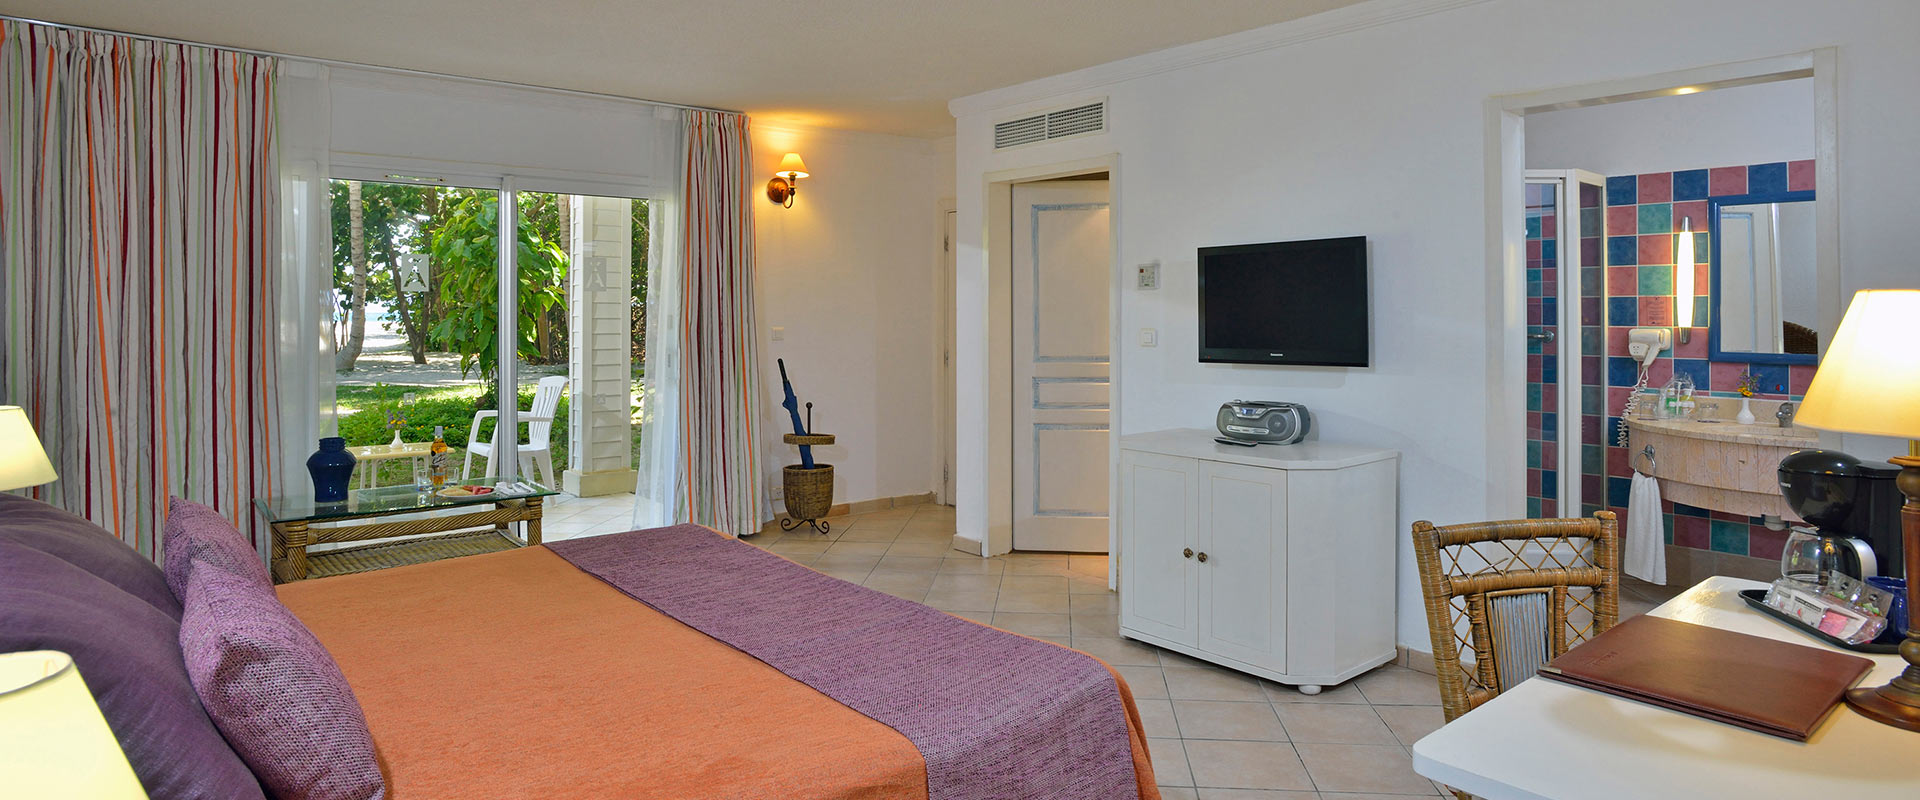 CU Hotel Melia Peninsula Varadero Room